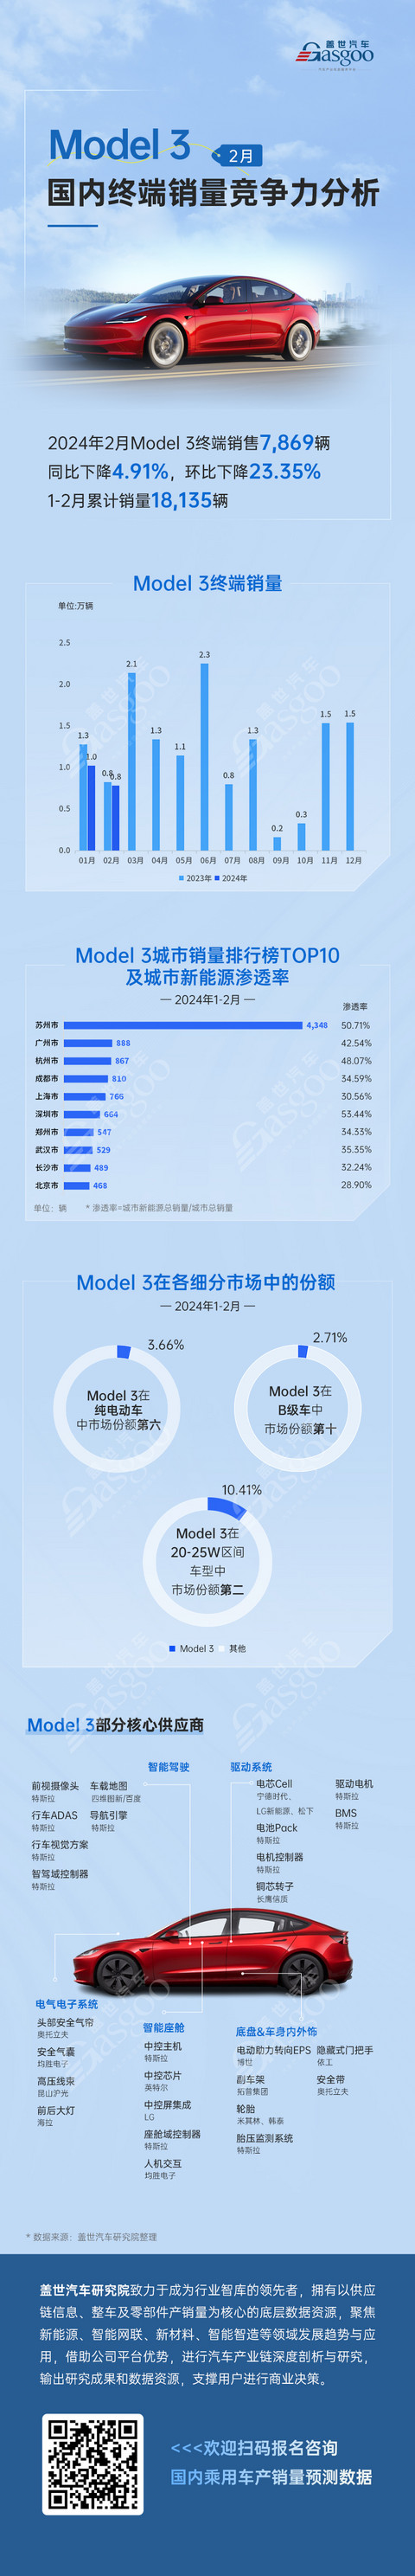 Model 3国内终端销量竞争力分析 | 盖世汽车国内乘用车产销量预测数据